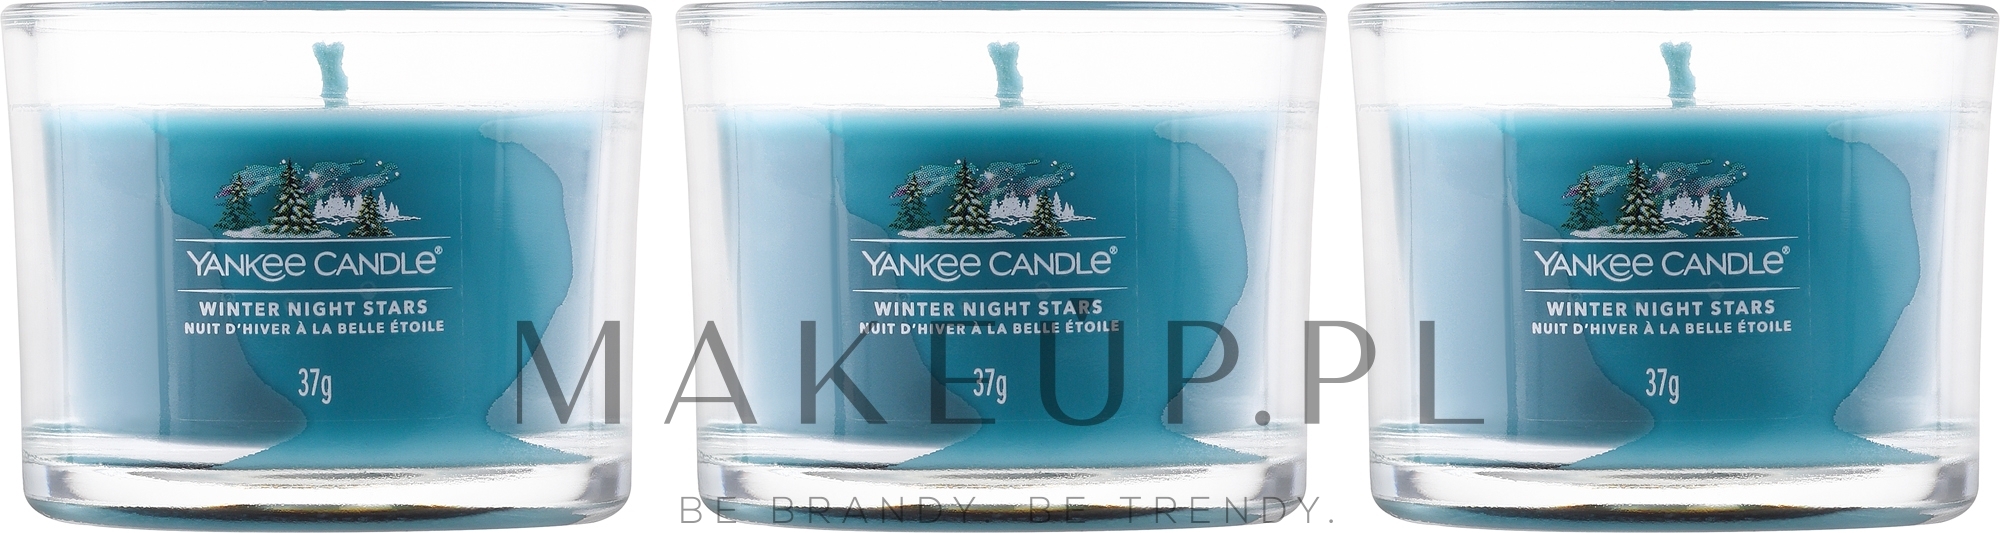 Mini świeczka zapachowa w szkle - Yankee Candle Winter Night Stars Filled Votive — Zdjęcie 3 x 37 g